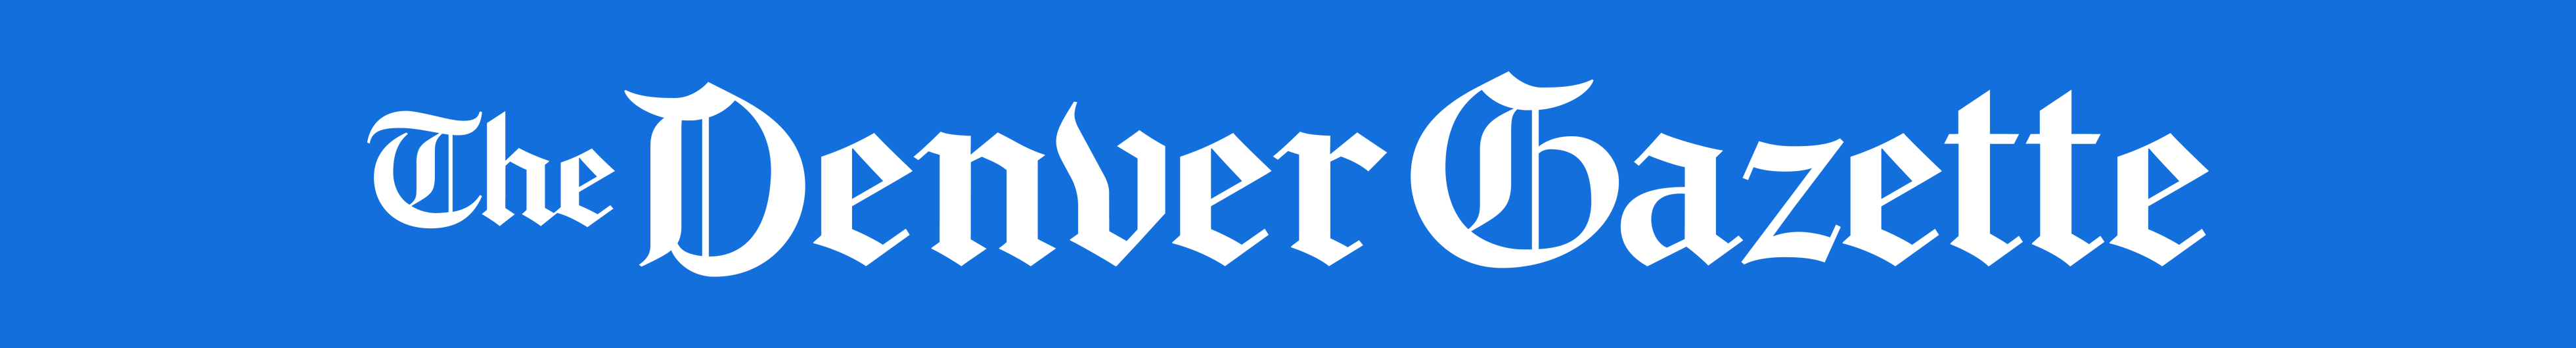 The denver gazette logo